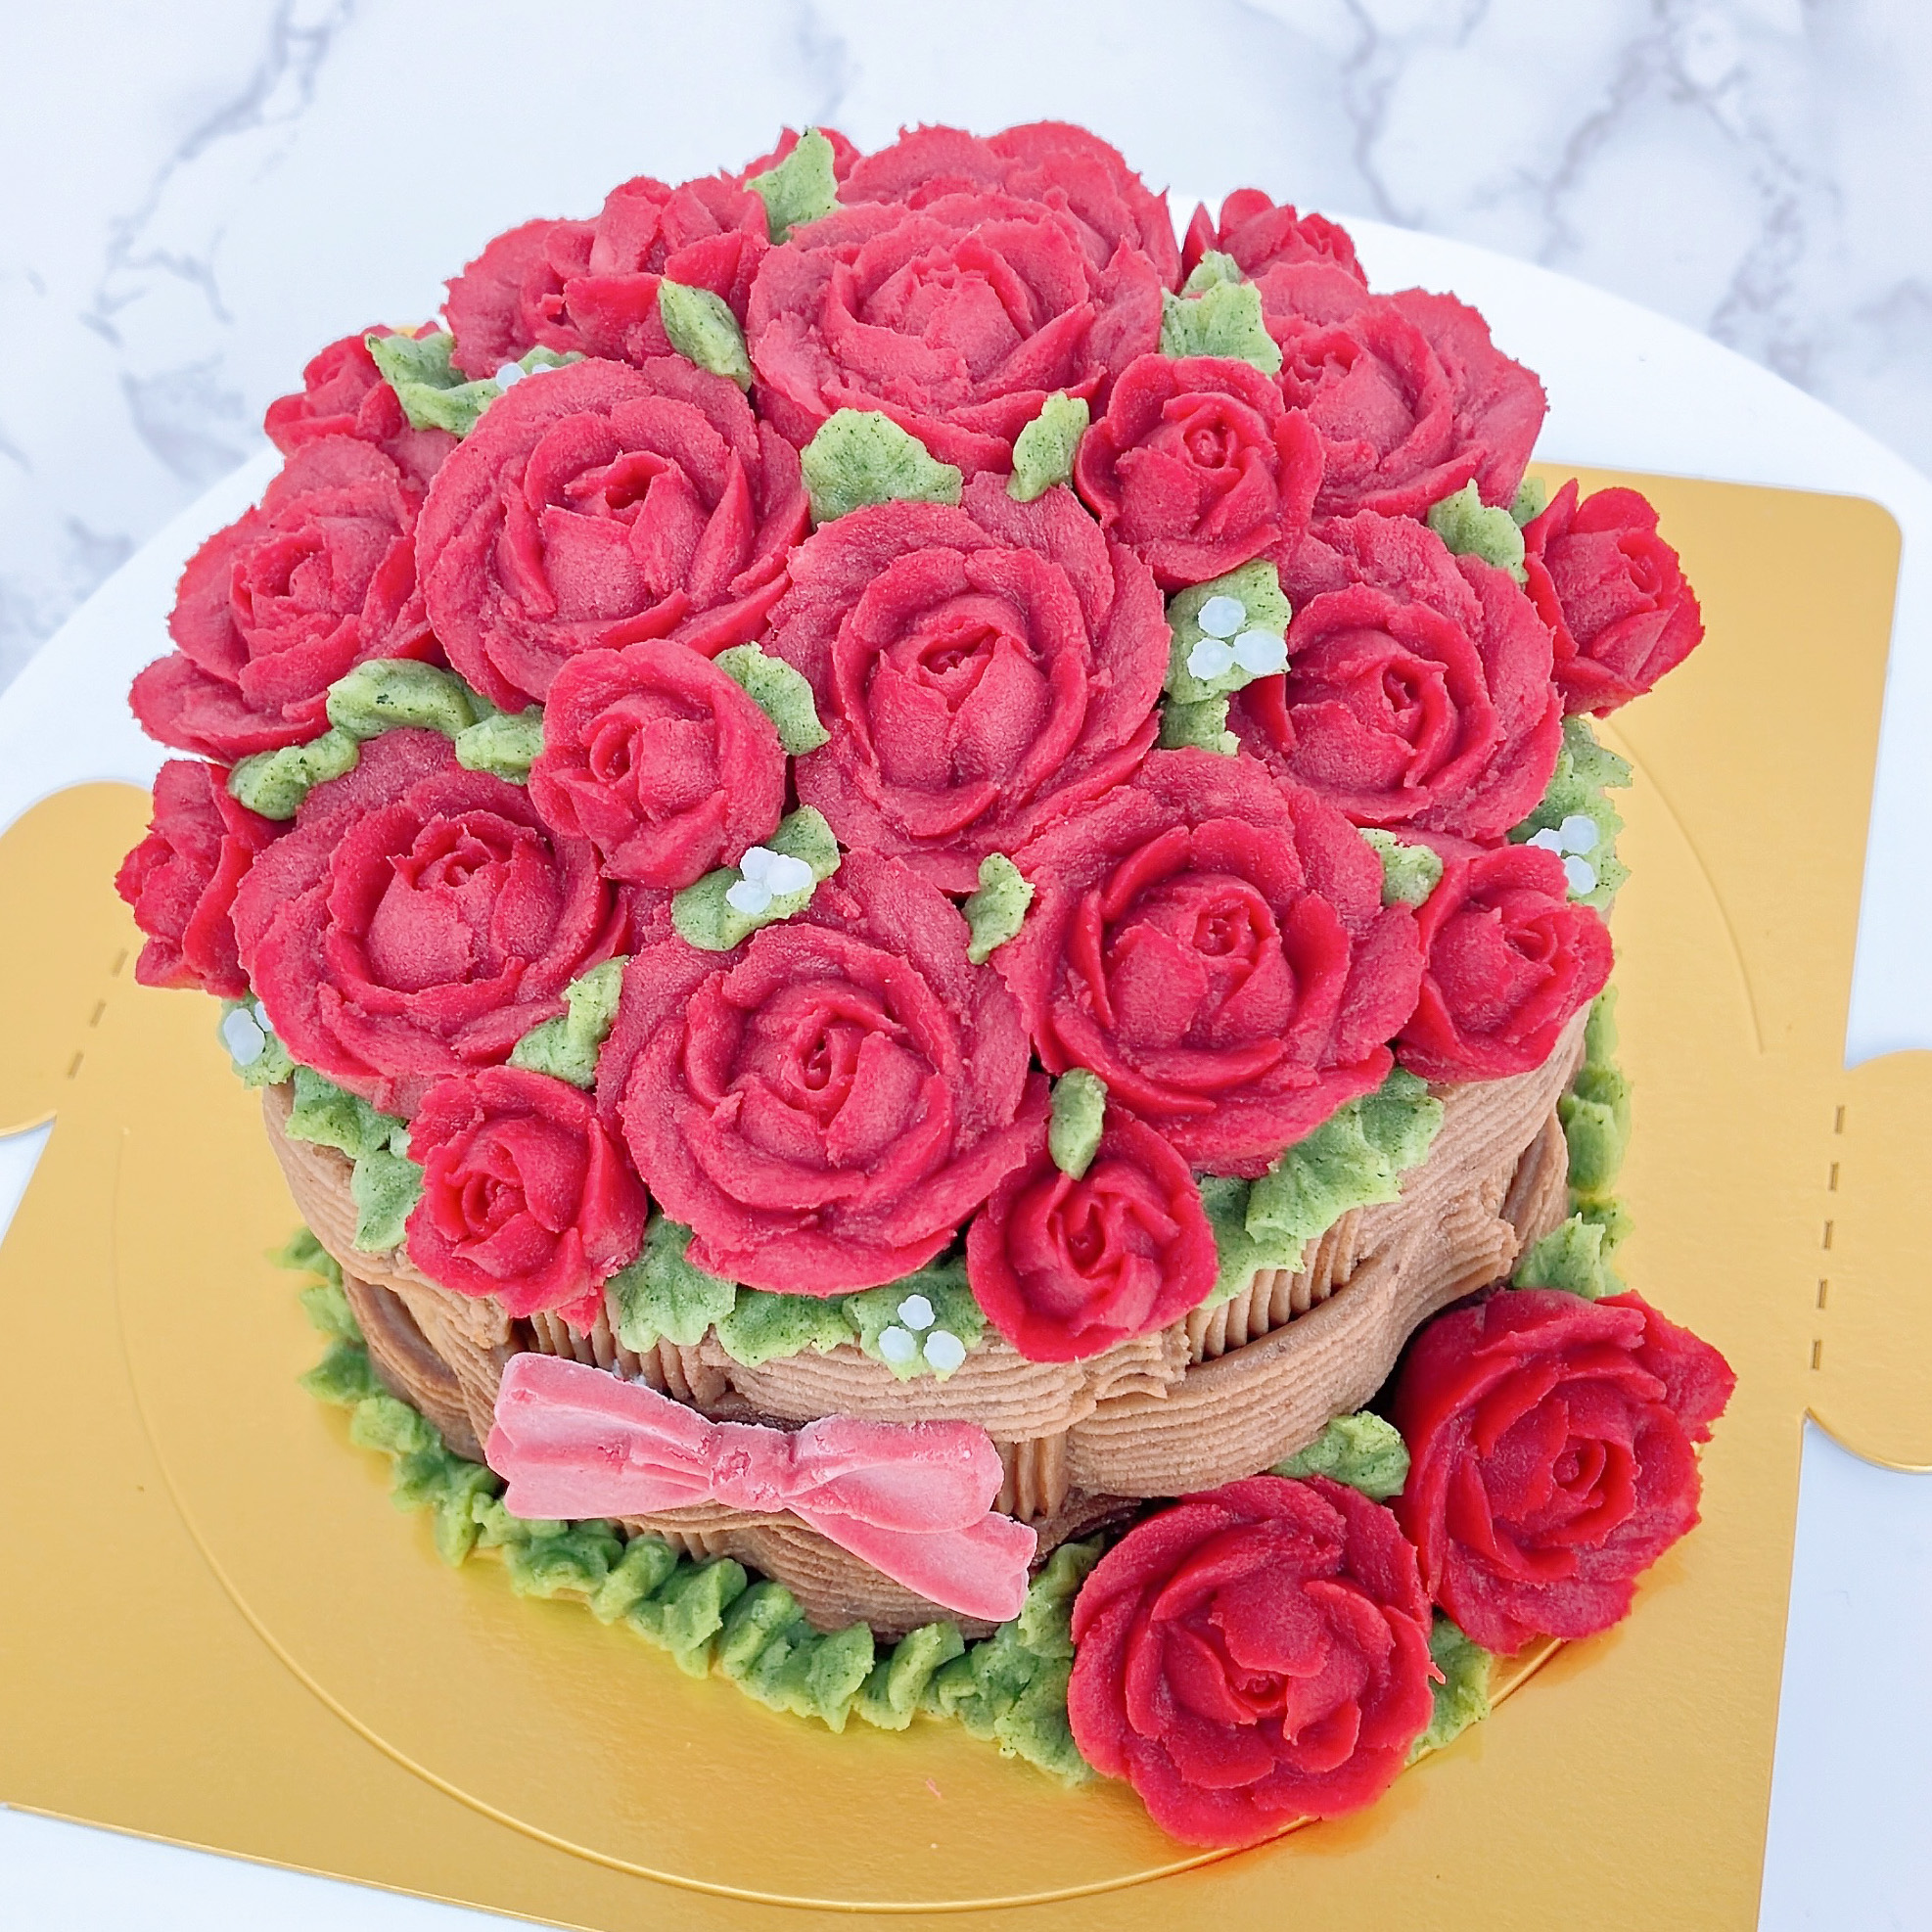 真紅の薔薇のケーキ ラージサイズ  [犬用ケーキ,猫用ケーキ]